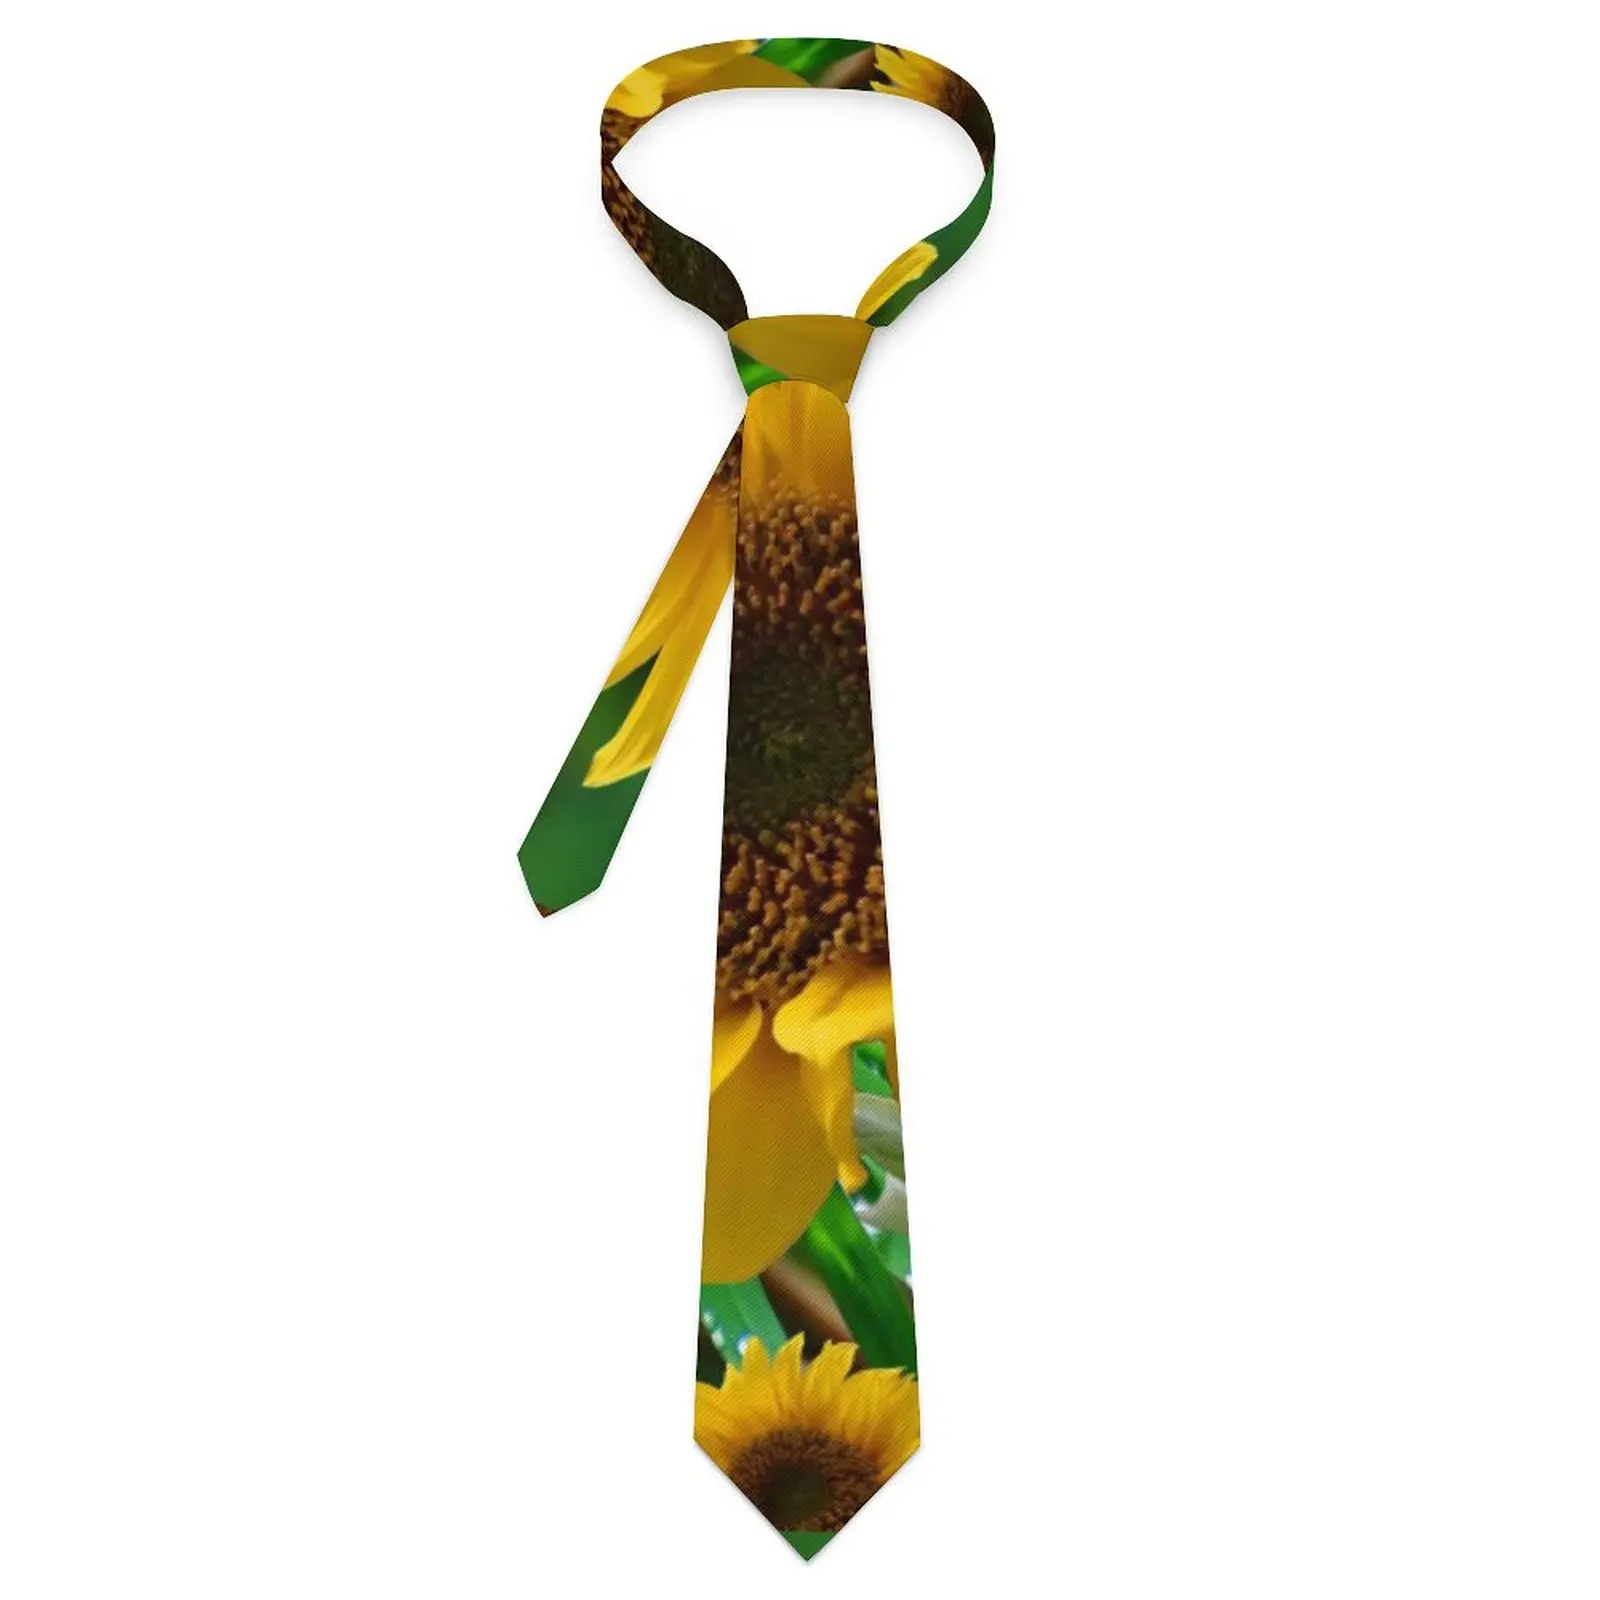 

Натуральный галстук с подсолнухами, шейный галстук с принтом зеленых листьев, забавный галстук-бабочка унисекс, для взрослых, индивидуальный галстук-бабочка, Подарочный галстук